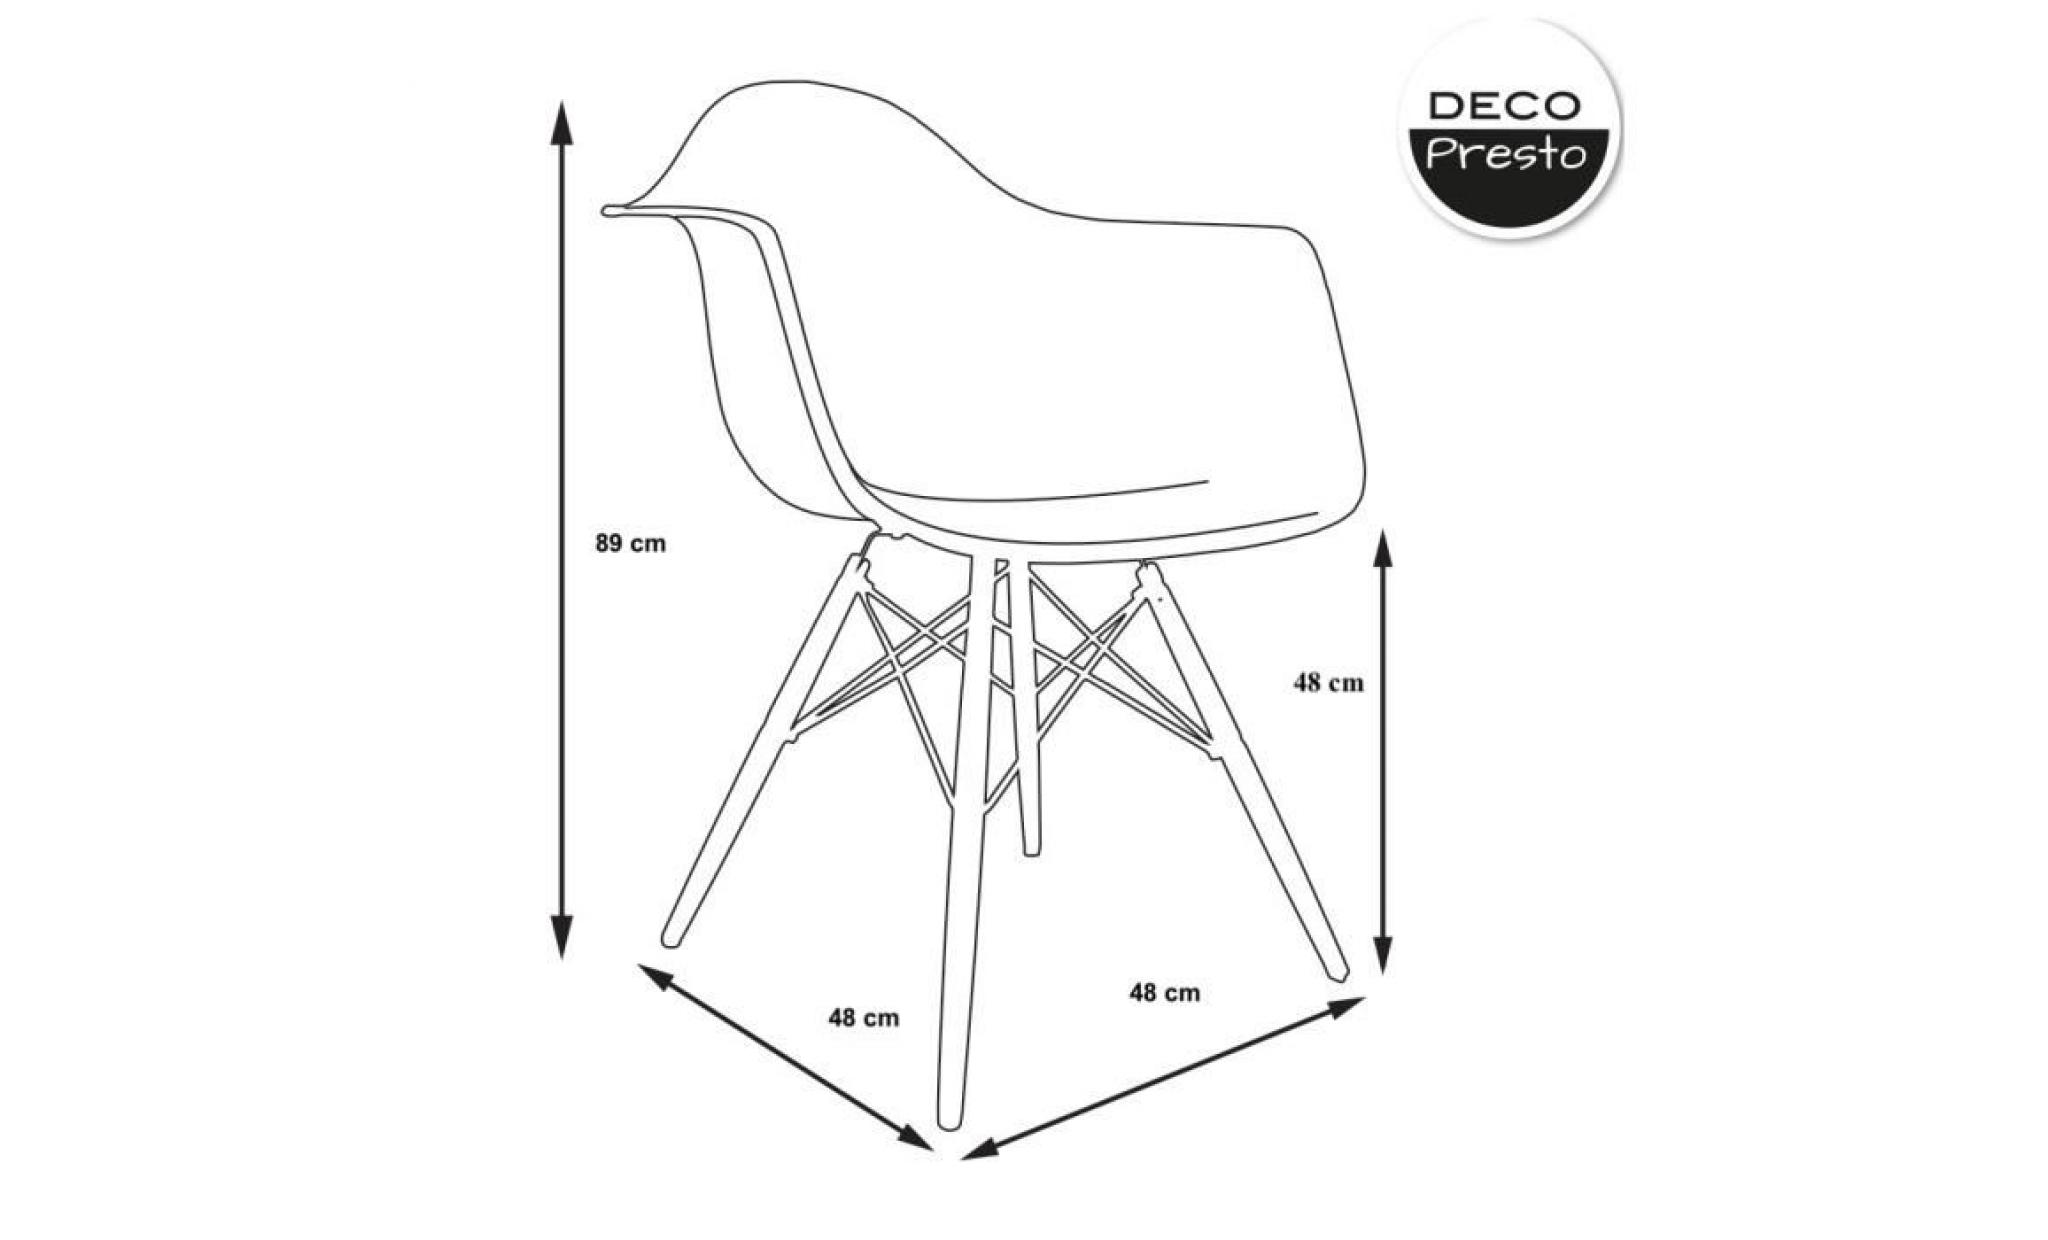 1 x fauteuil design scandinave haut. 48 cm vert cactus pieds: bois naturel decopresto dp dawl48 vc 1 pas cher